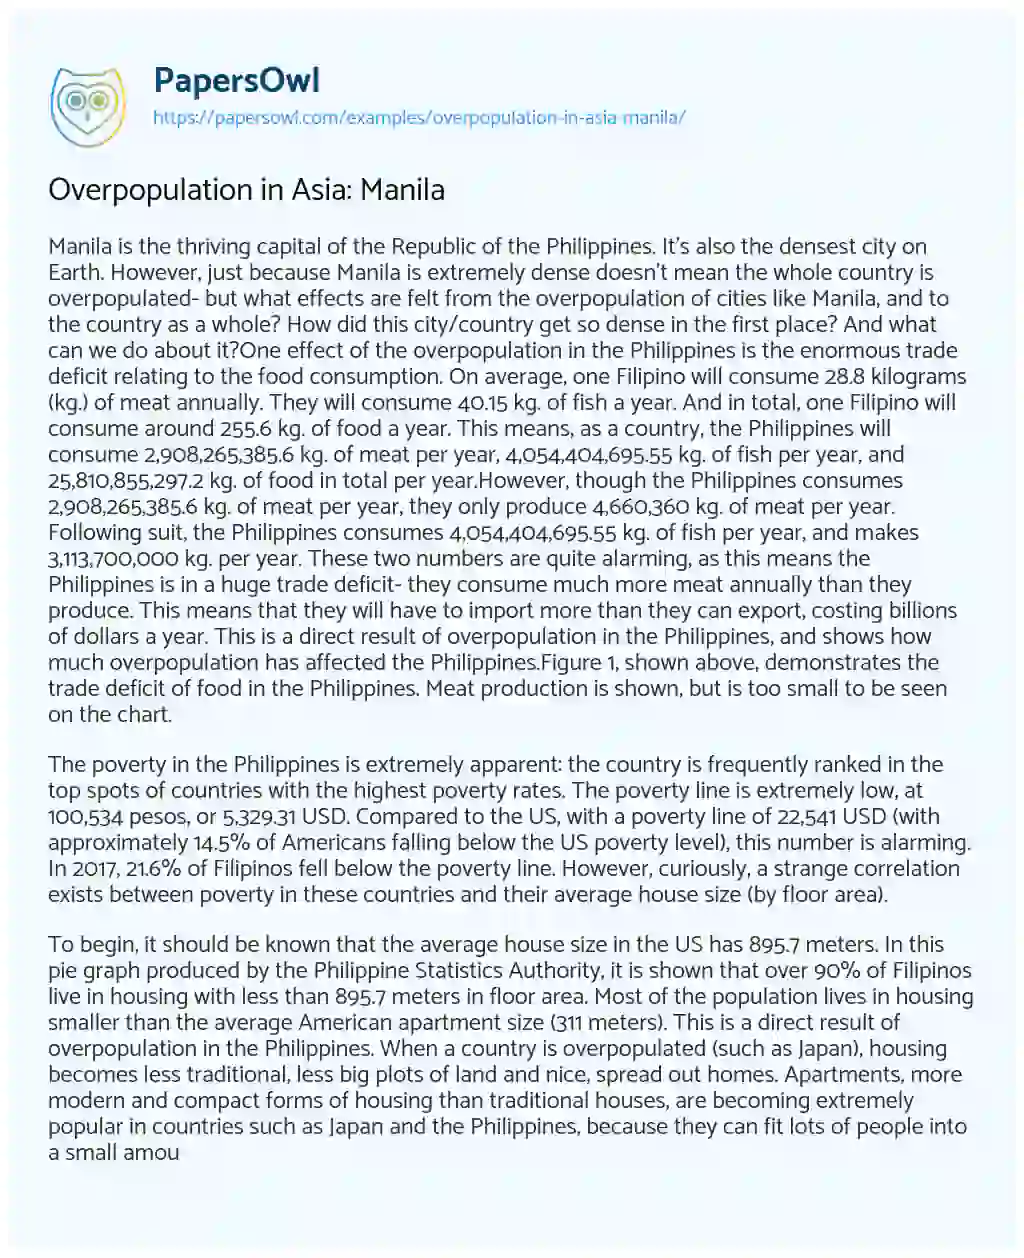 Overpopulation in Asia: Manila essay